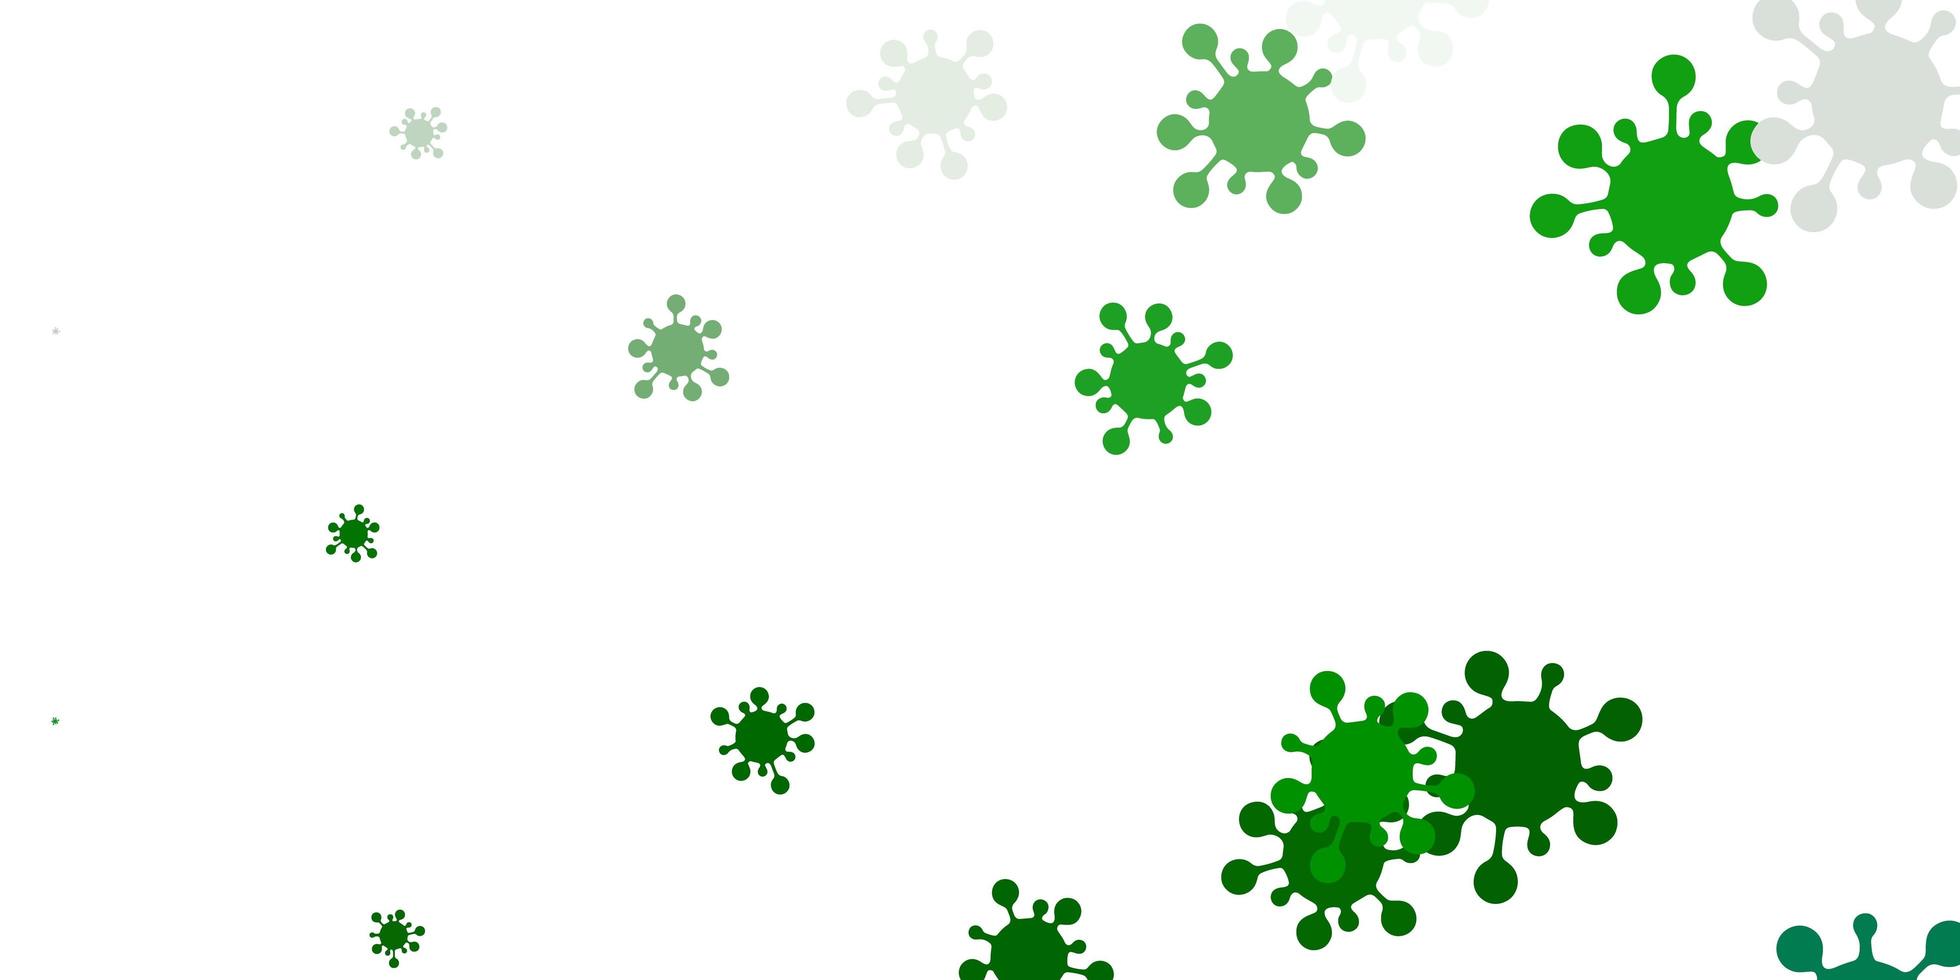 padrão de vetor verde claro com elementos de coronavírus